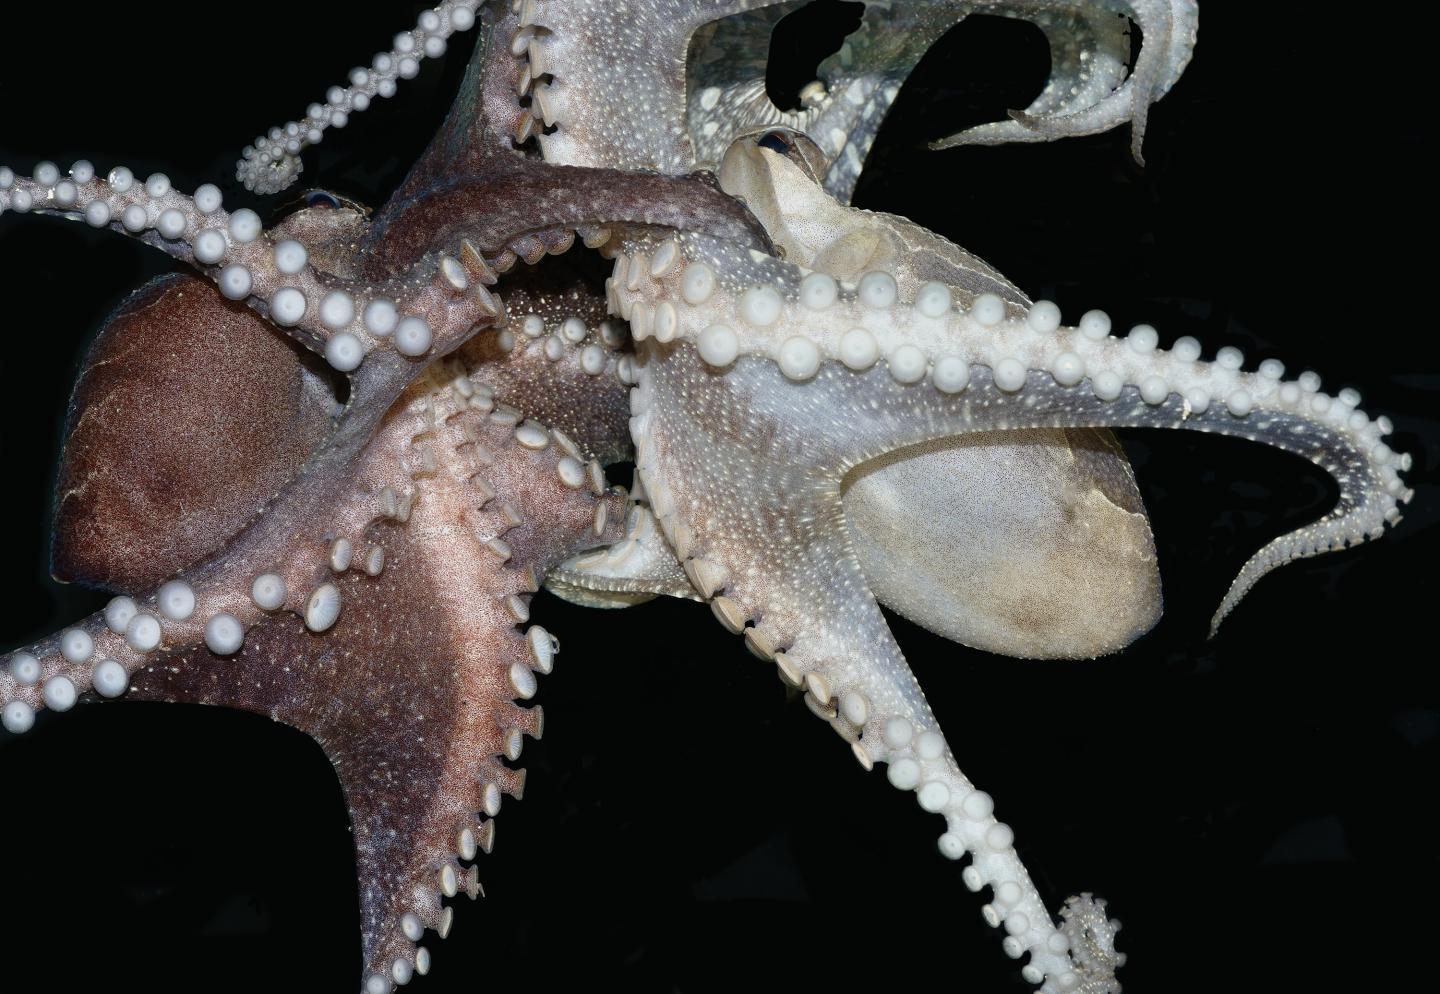 Octopus insertion